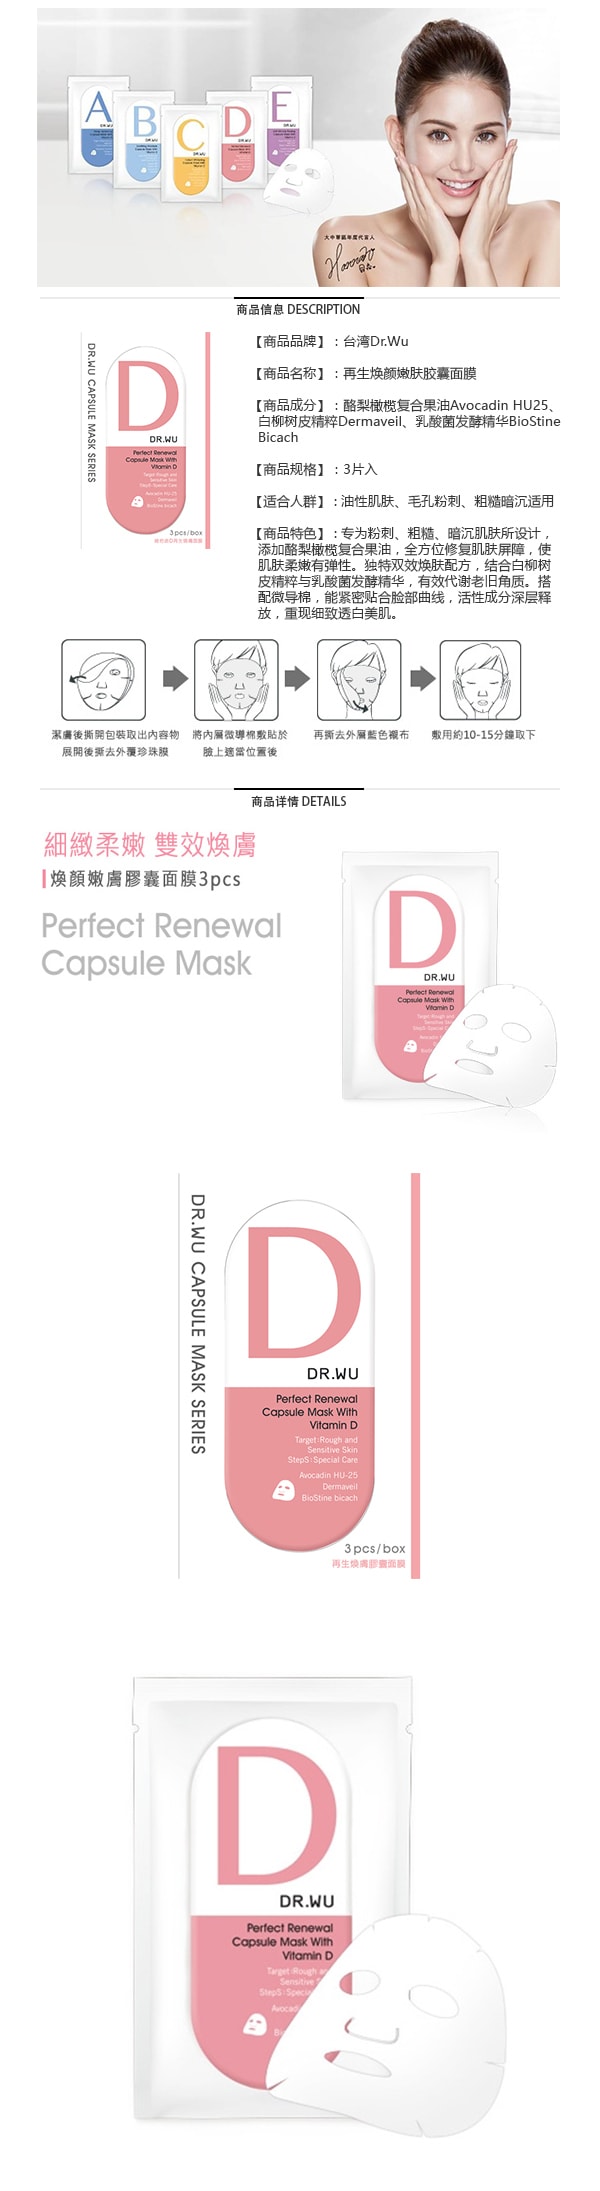 Perfect Renewal Capsule Mask 3sheets